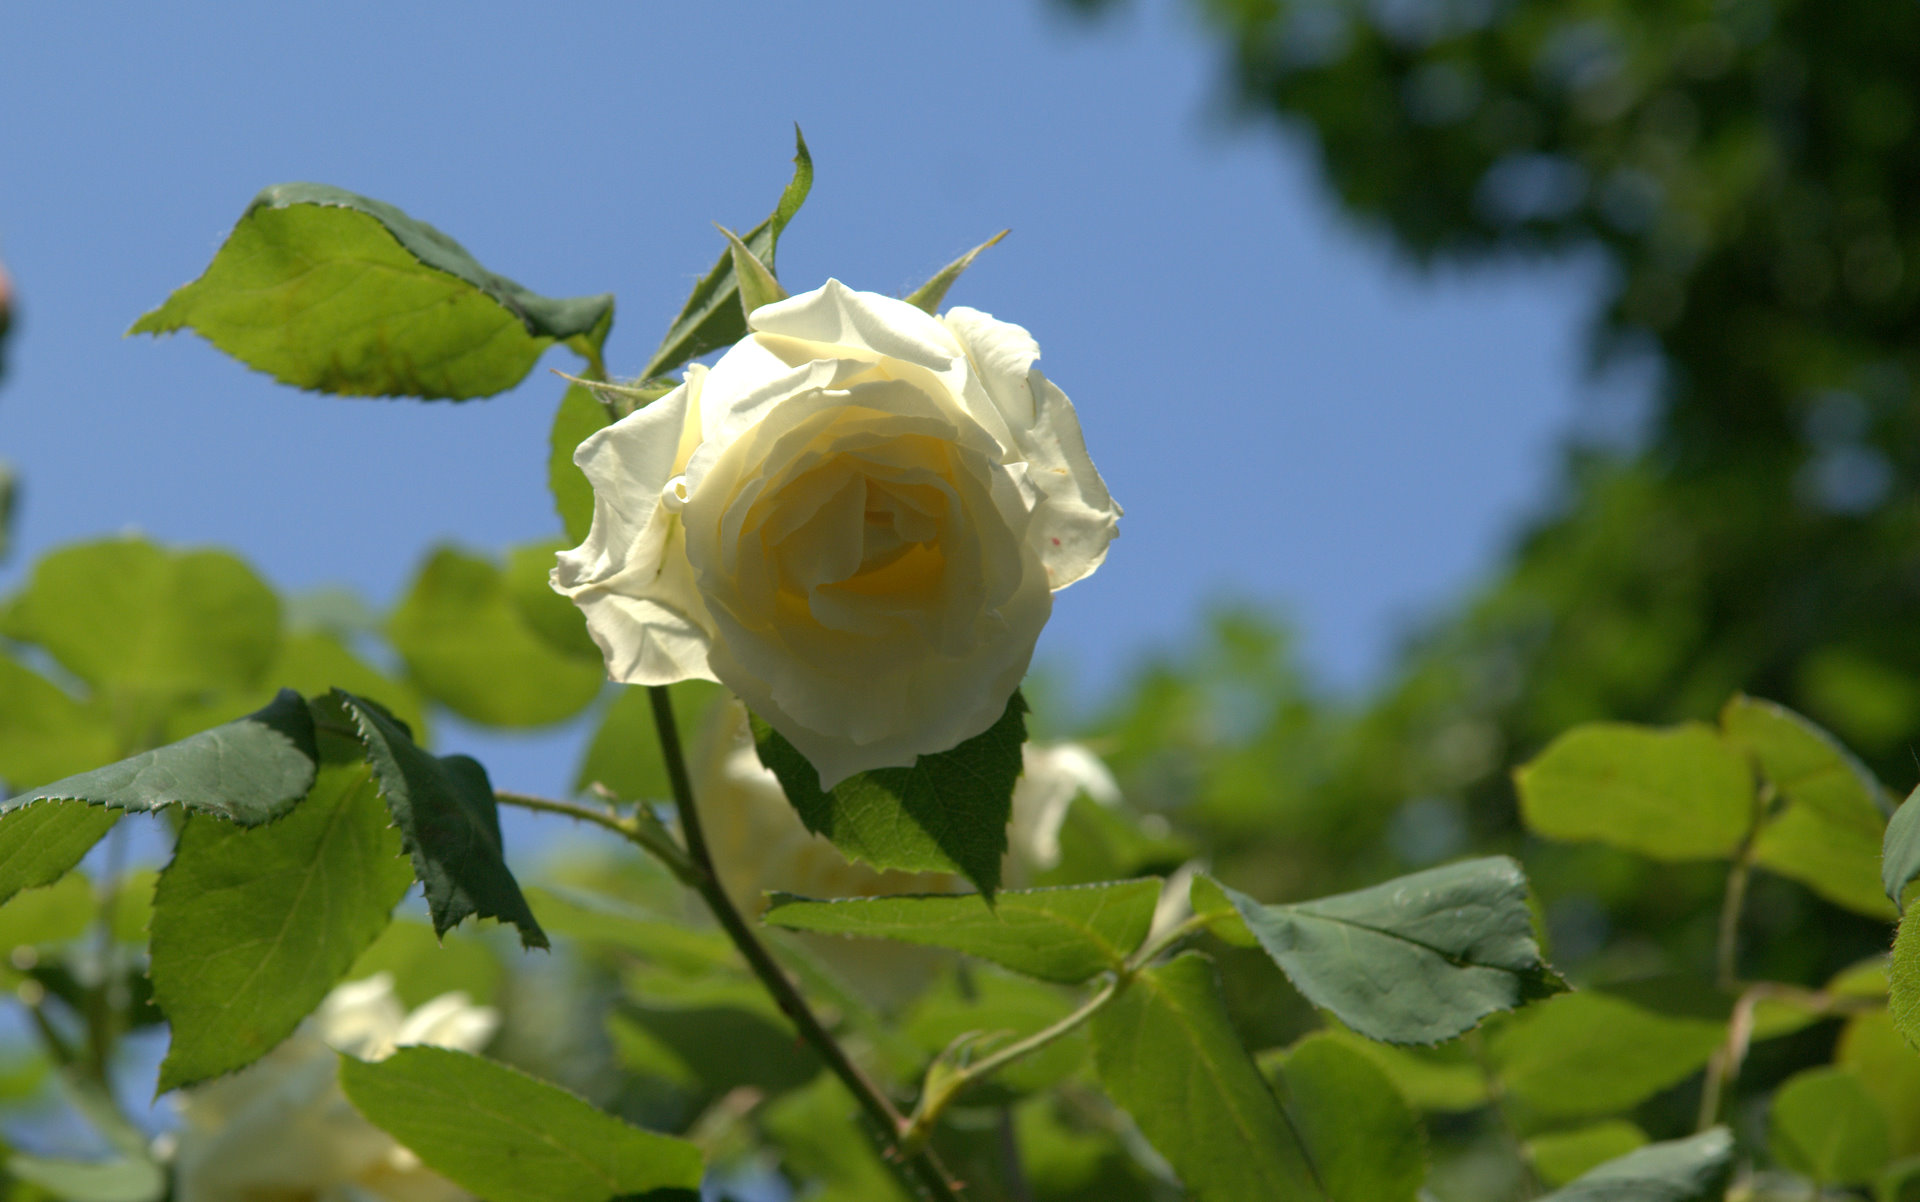 brilliant light white rose